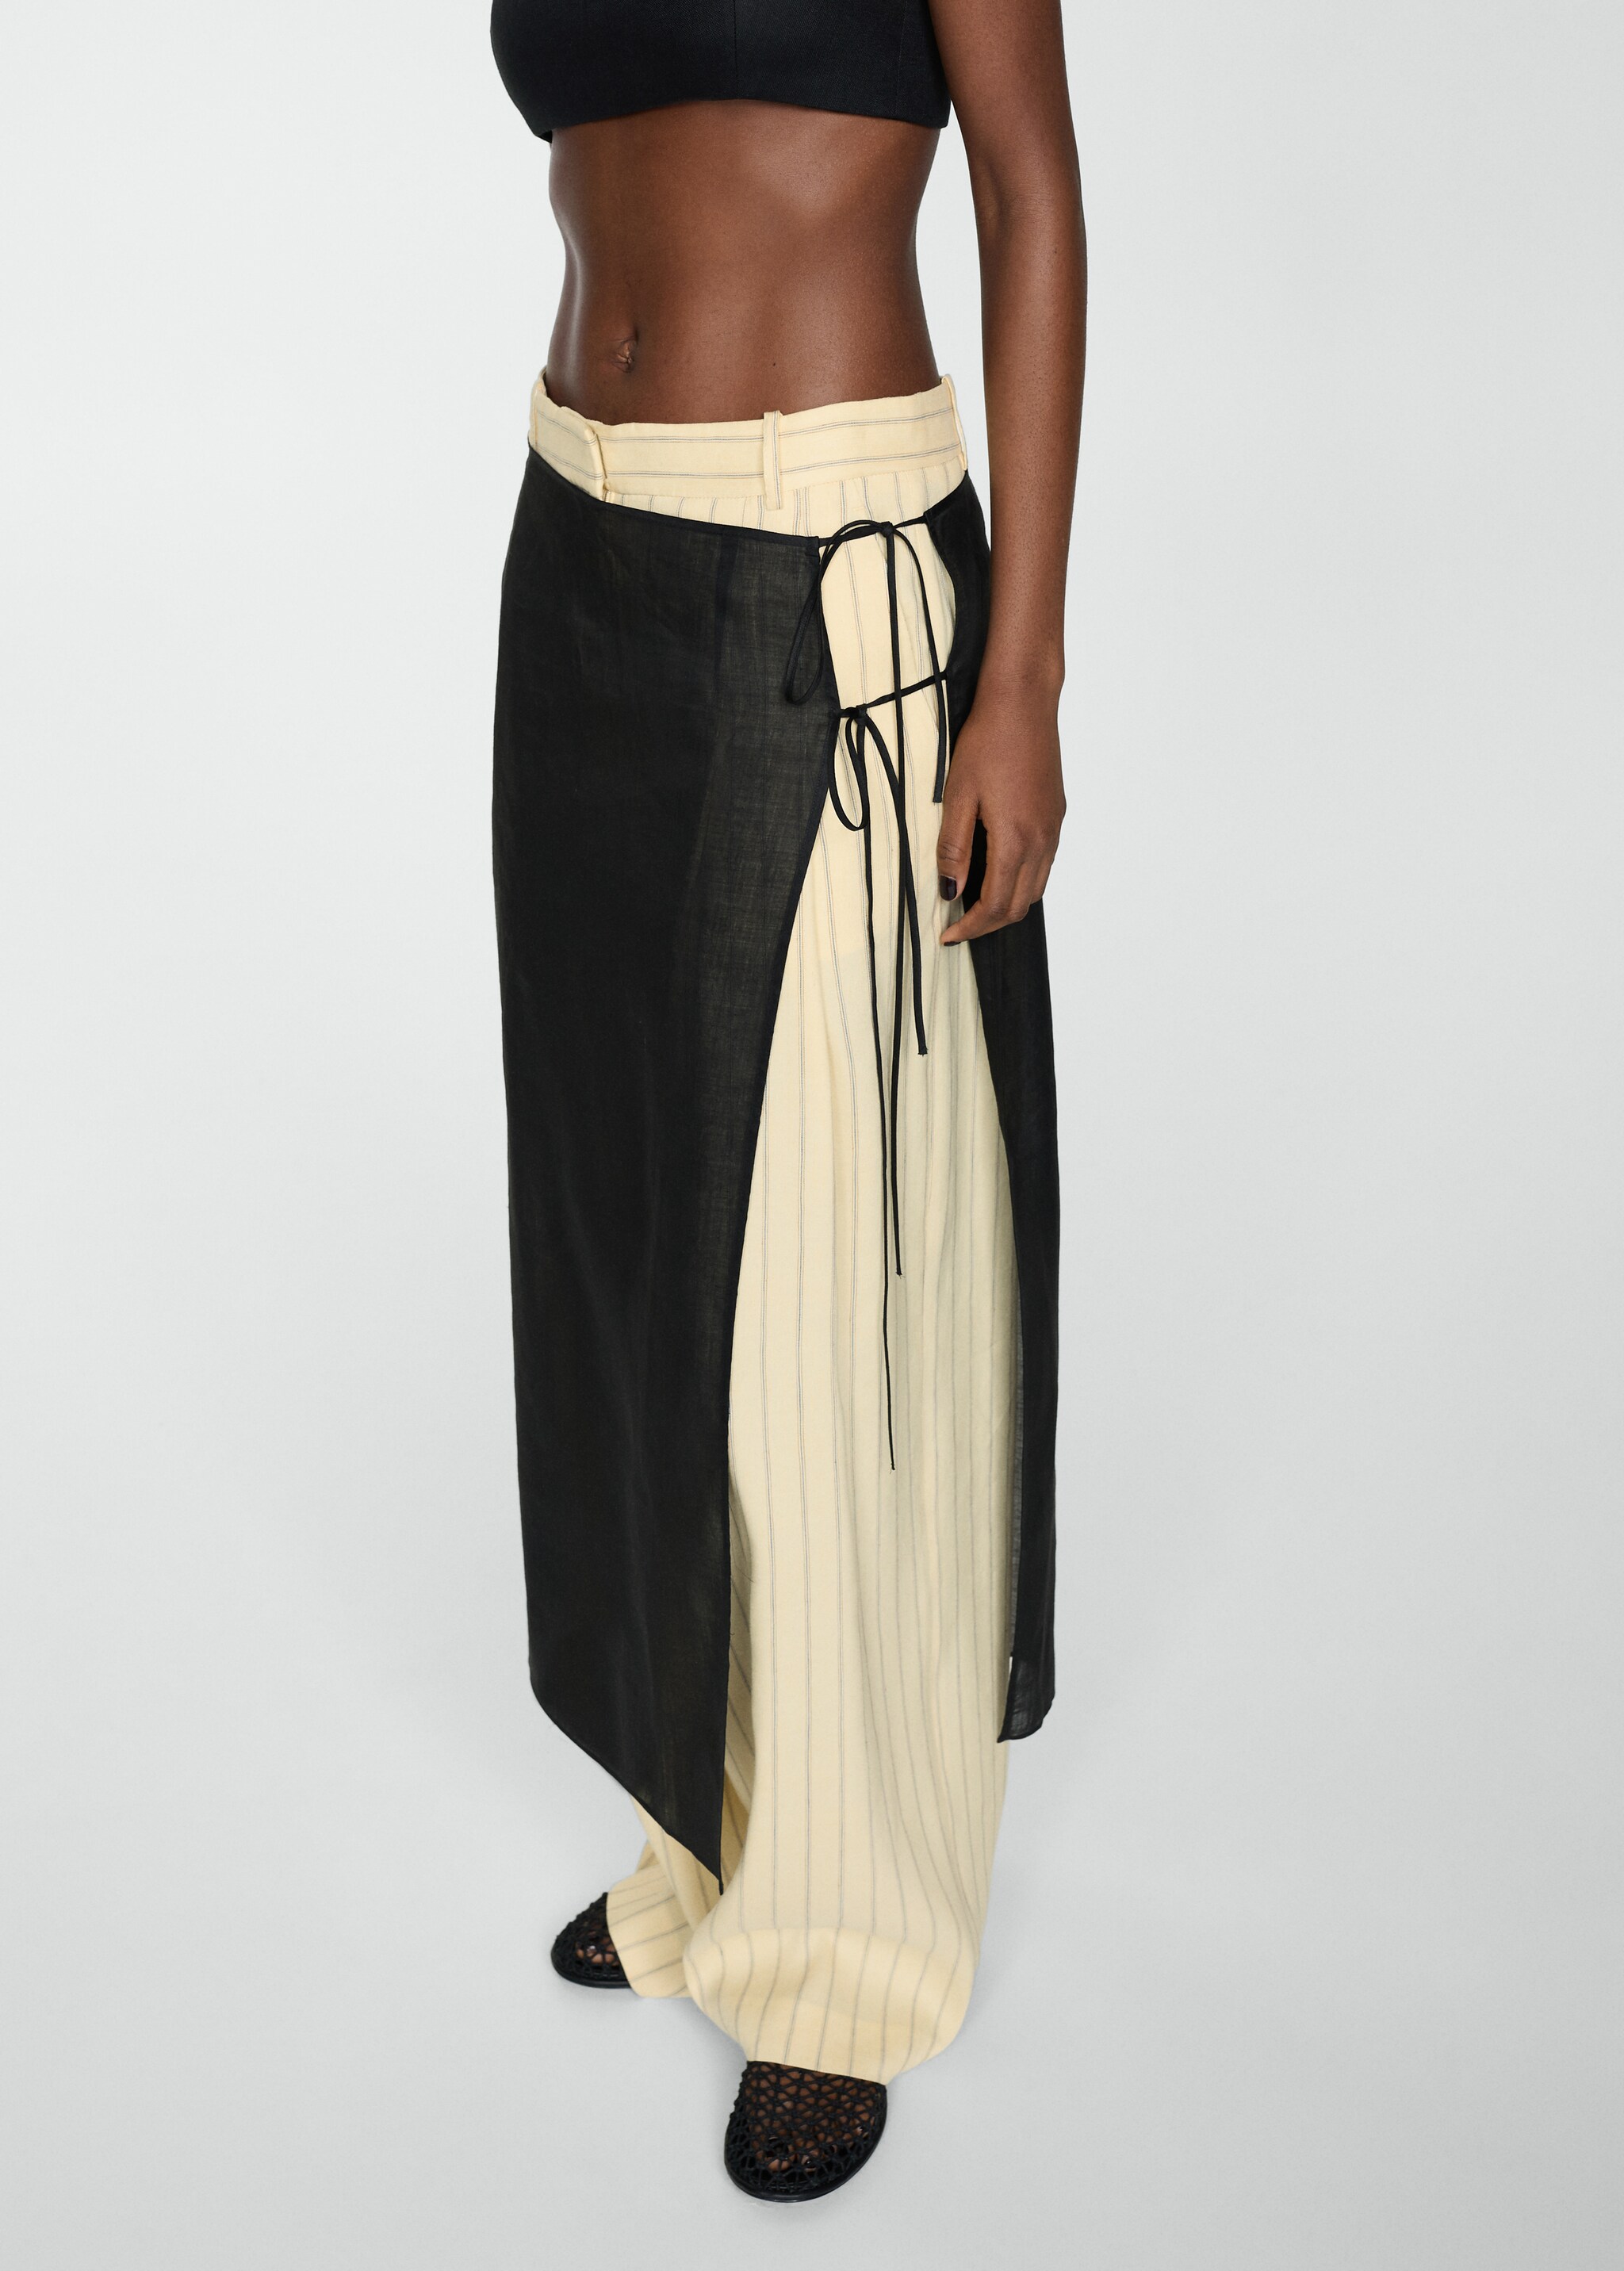 Ramio pareo skirt with slit - Medium plane